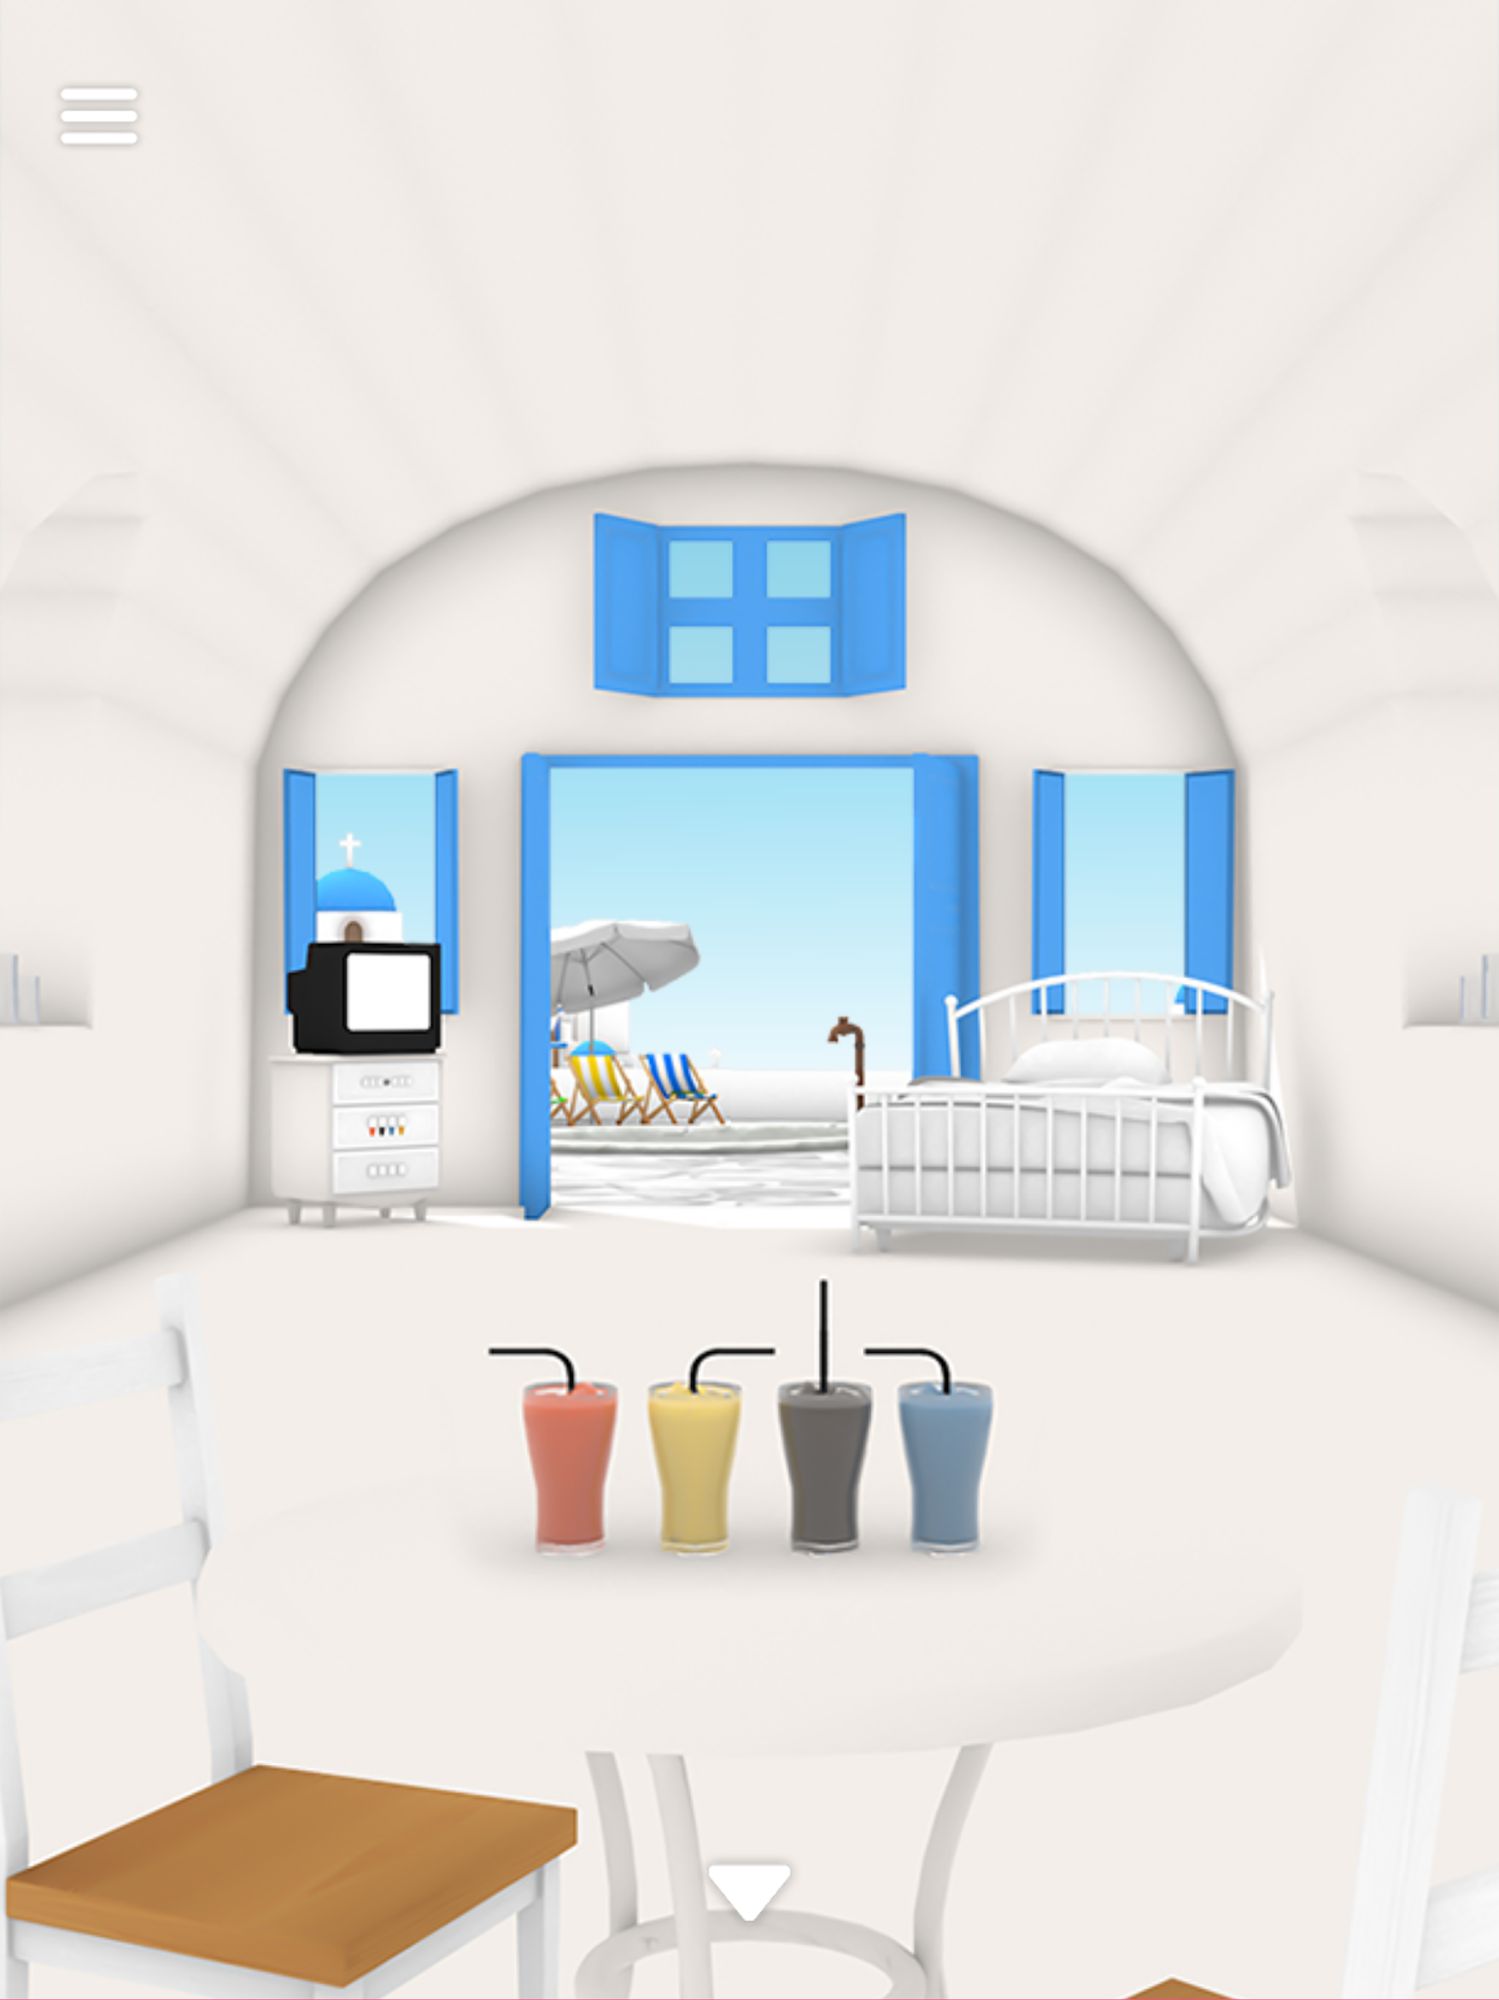 Escape Game: Santorini for Android